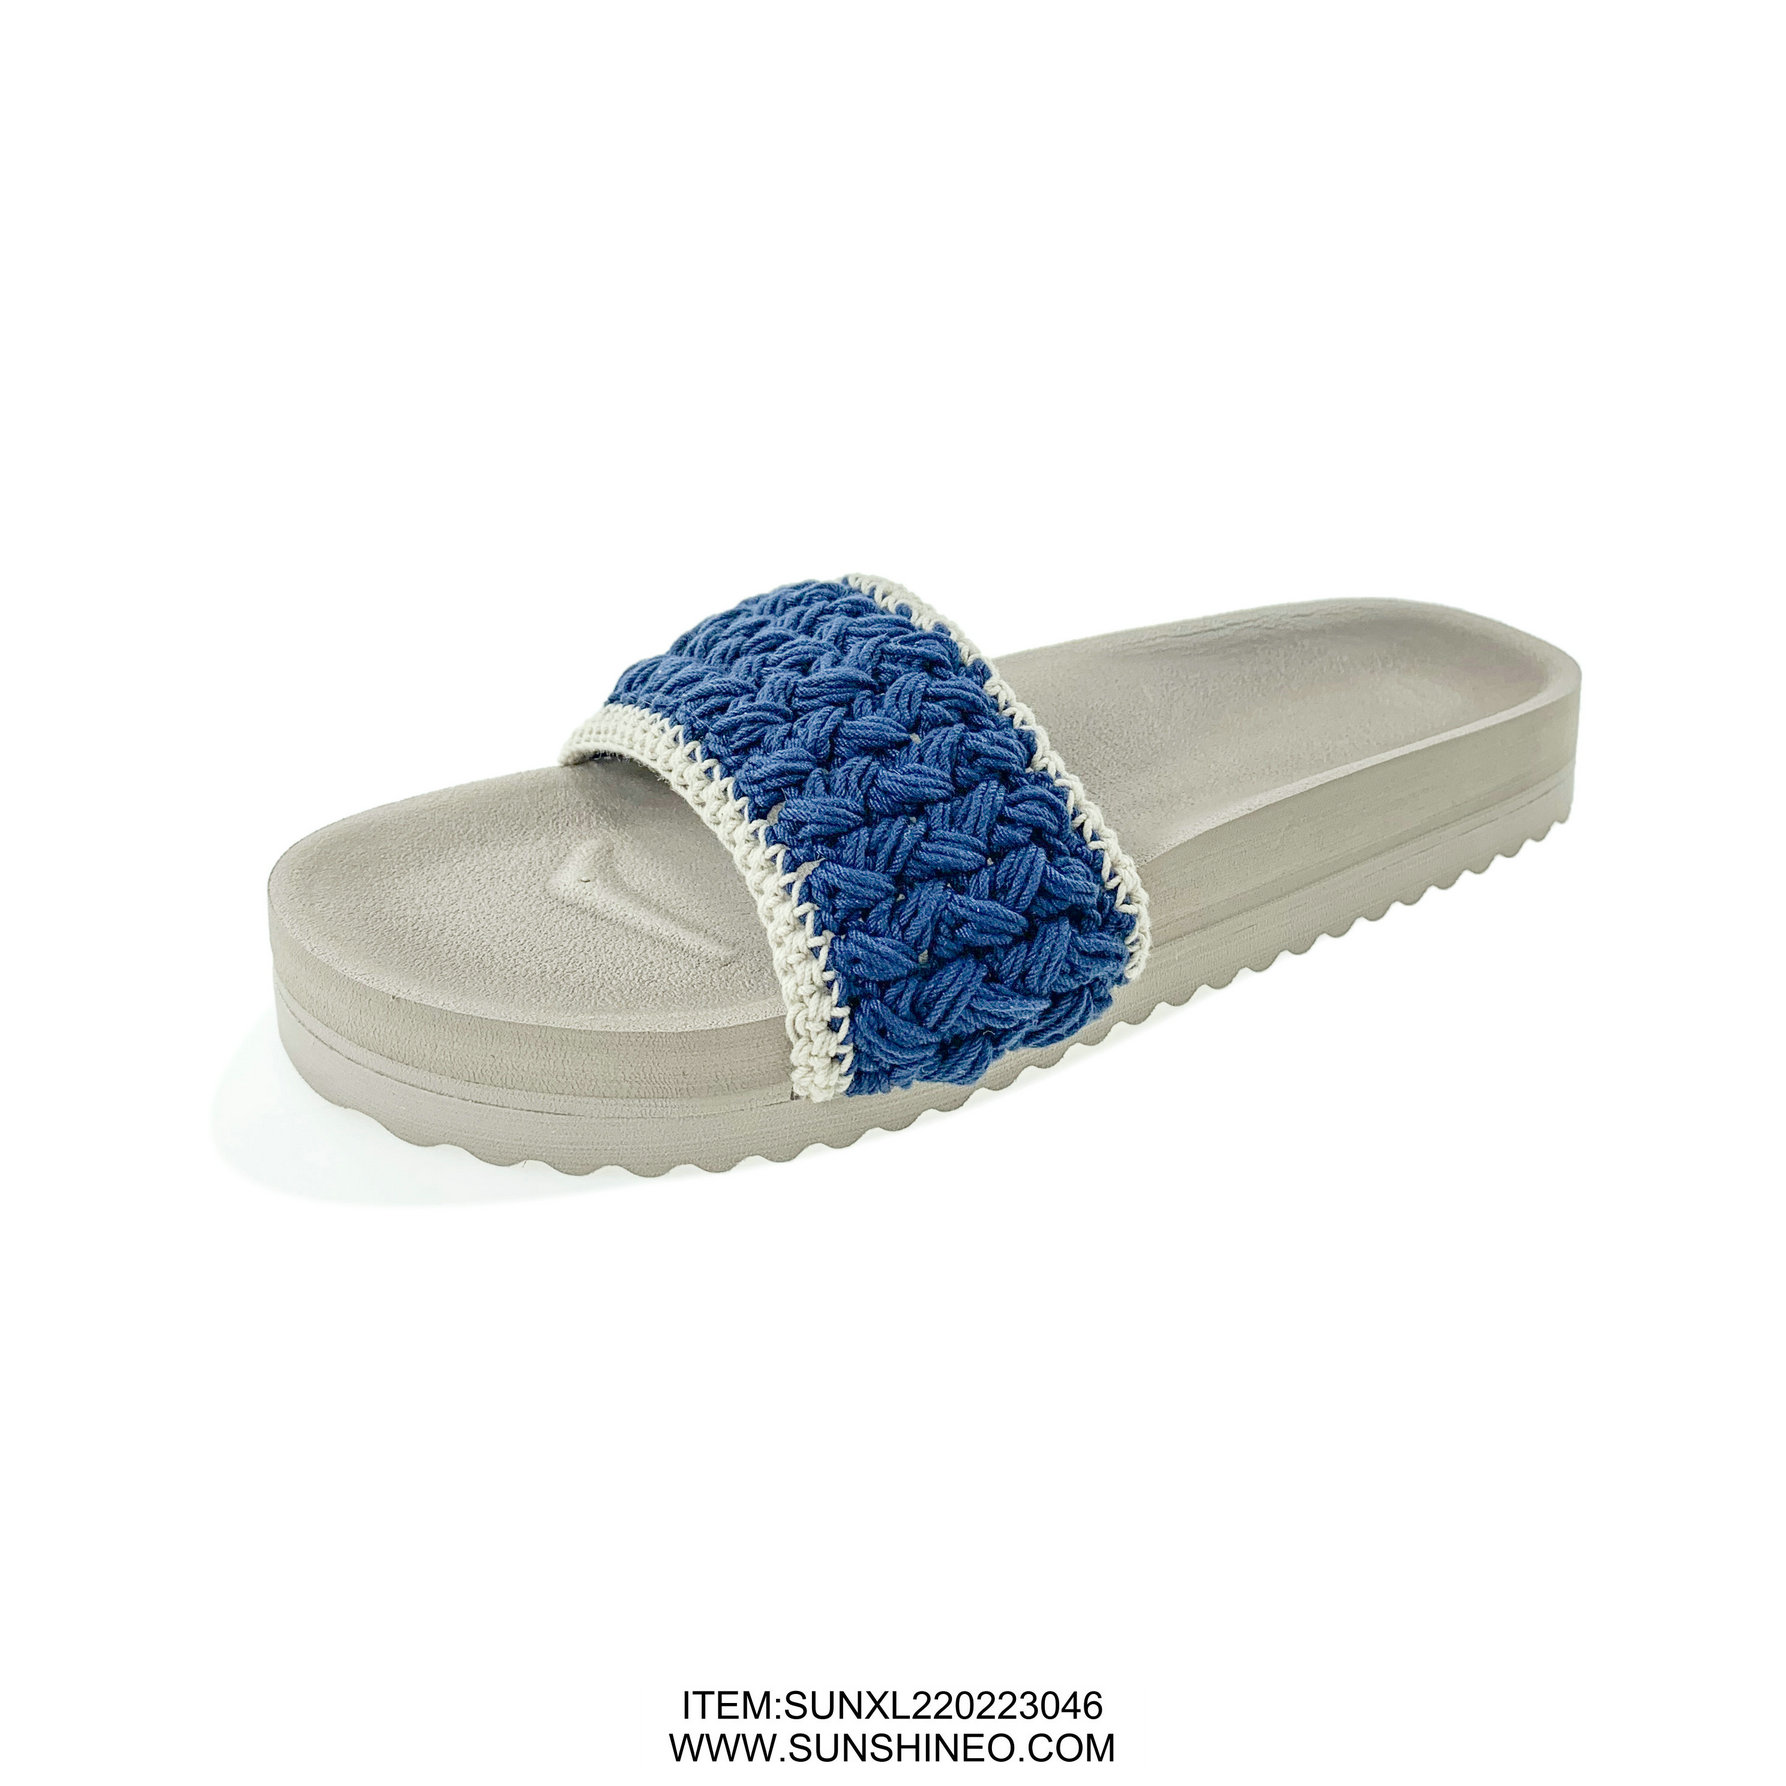 SUNXL220223046 flip flop sandals